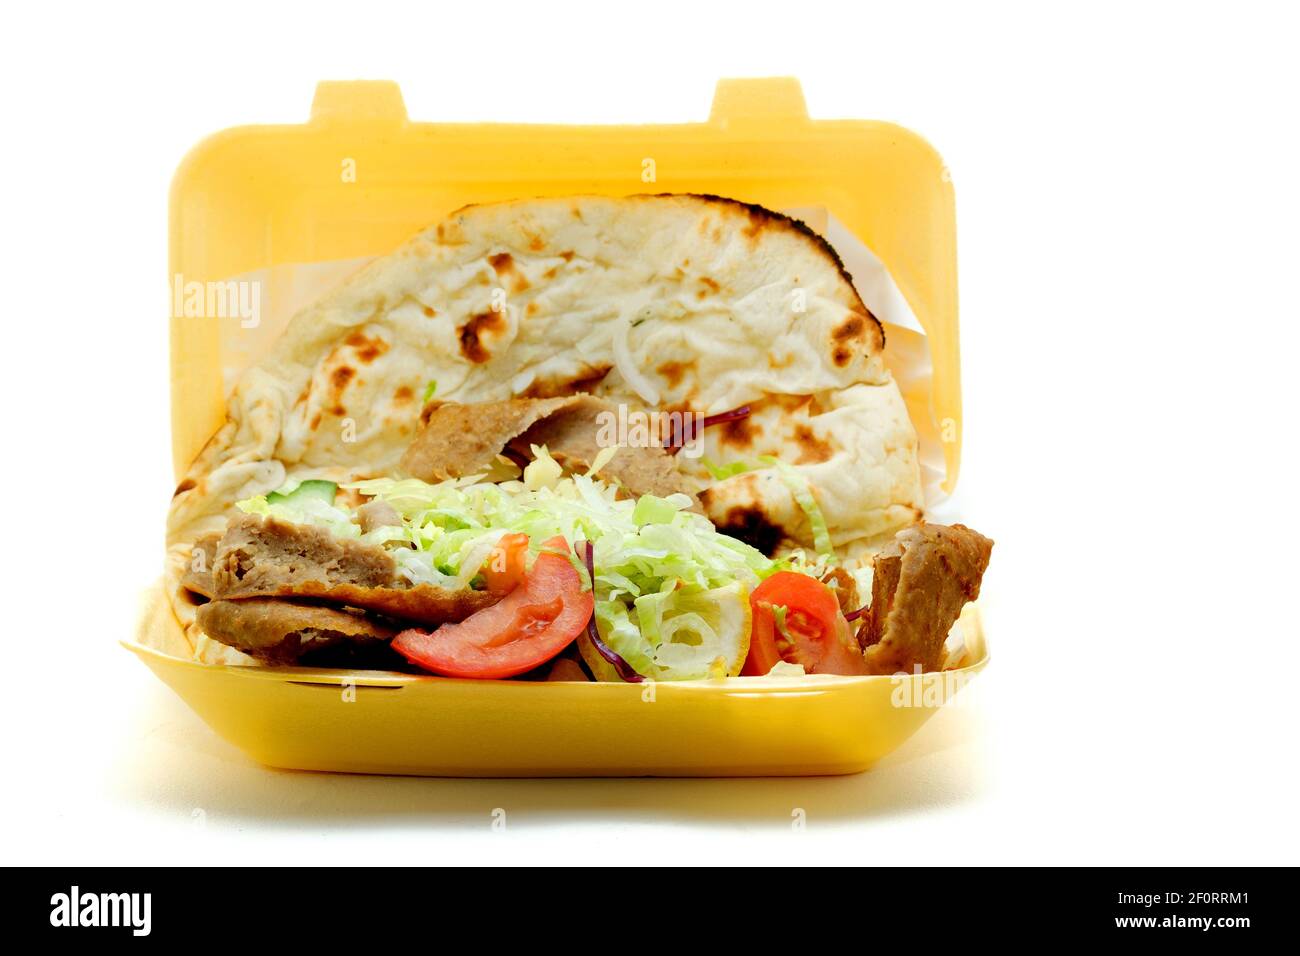 Ein Döner zum Mitnehmen, oder Spender Kebab, serviert mit Salat und in ein Nan-Brot eingewickelt. Der Kebab wurde in einem Einweg-Styropor-Behälter verkauft. Stockfoto